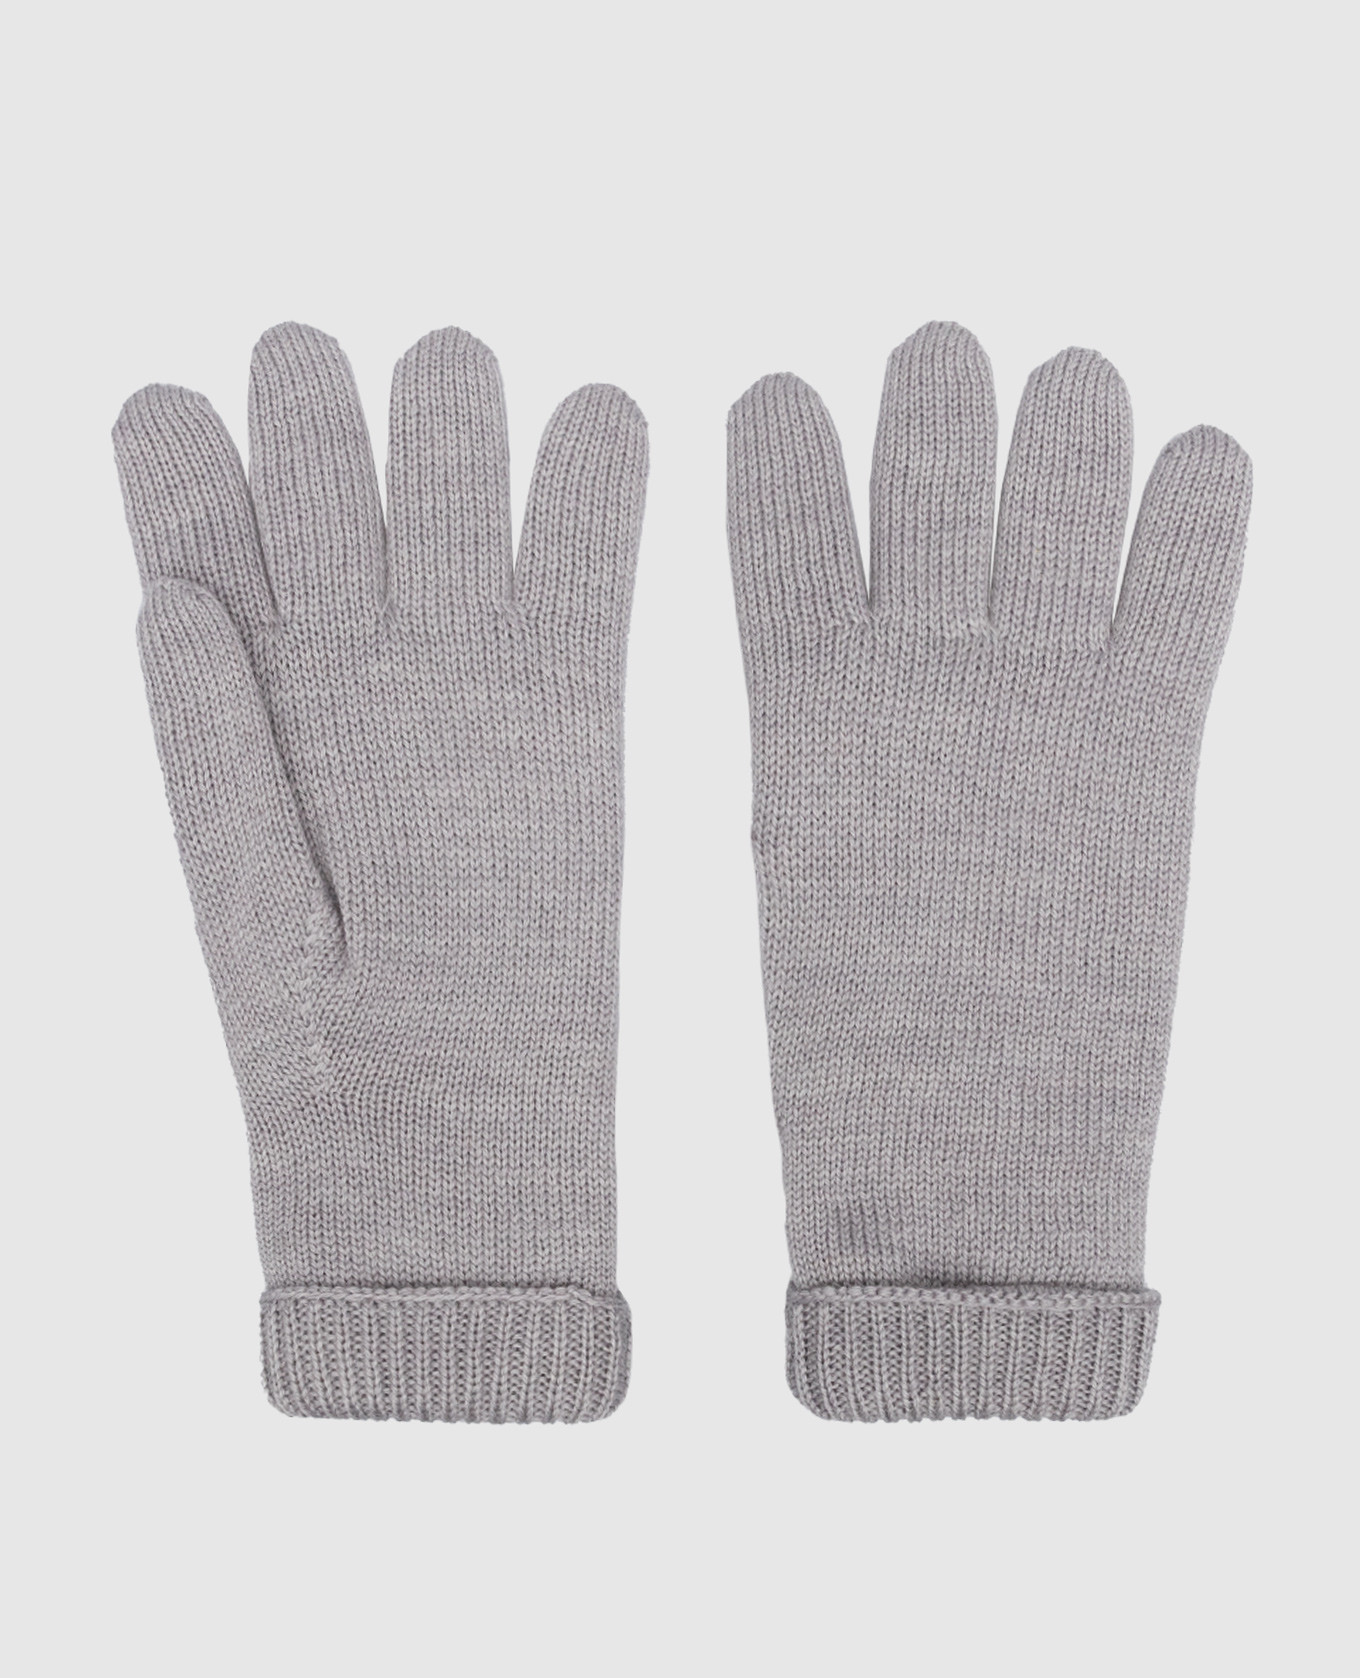 Children's gray mittens made of wool